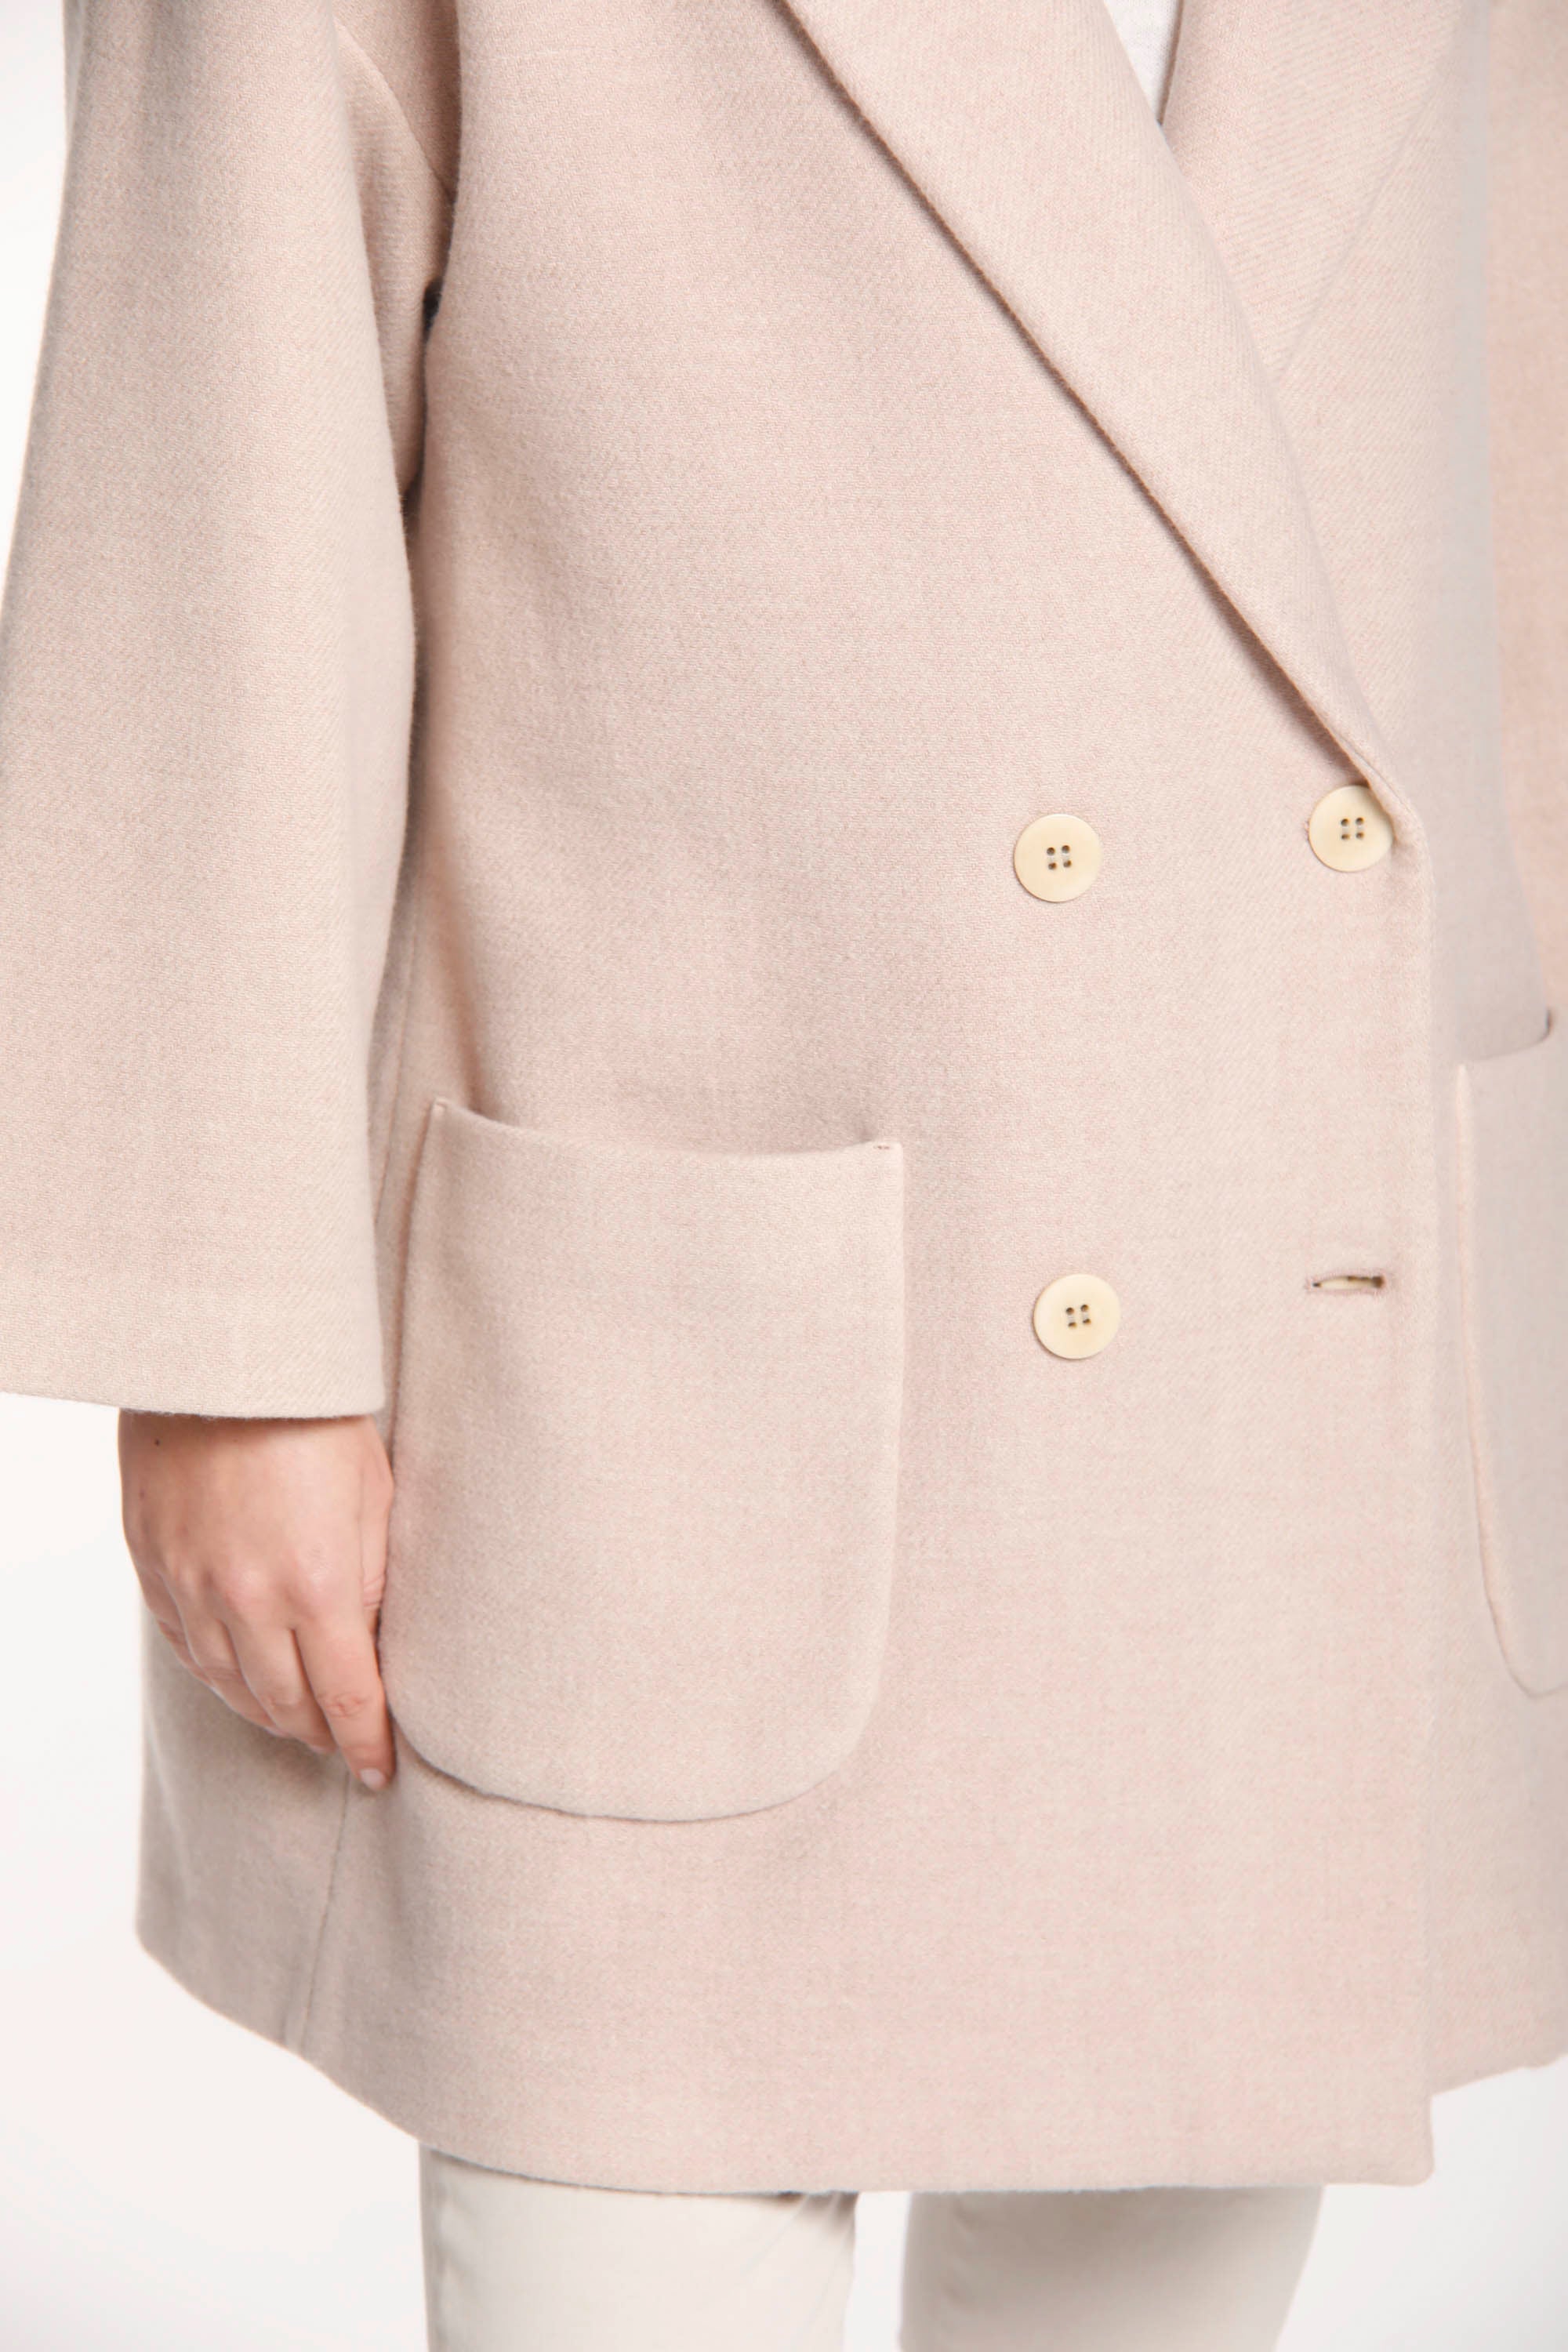 Image 3 d'un manteau femme en laine rose clair modèle Noemi par Mason's.